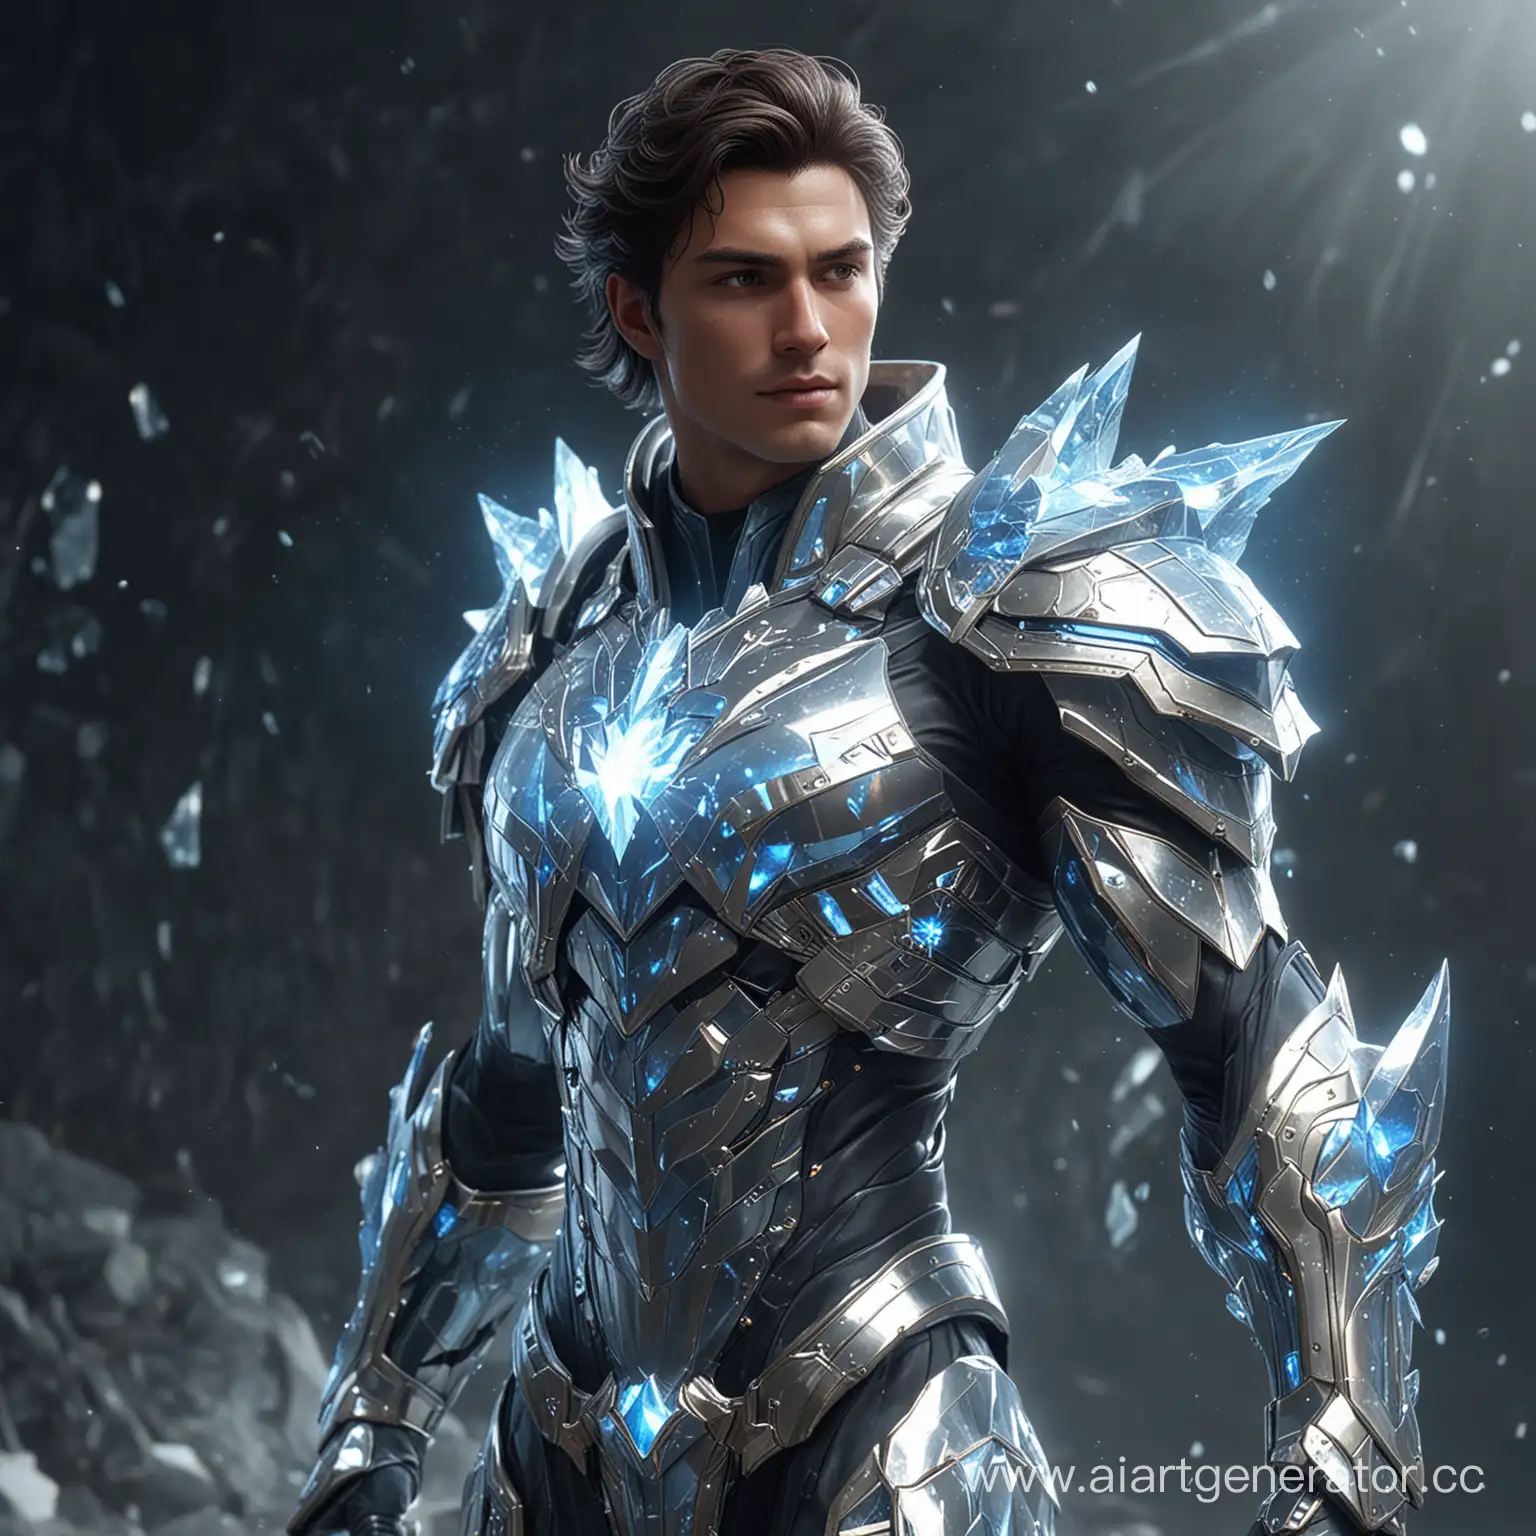 Crystal-Guardian-Heroic-Figure-in-Radiant-Armor